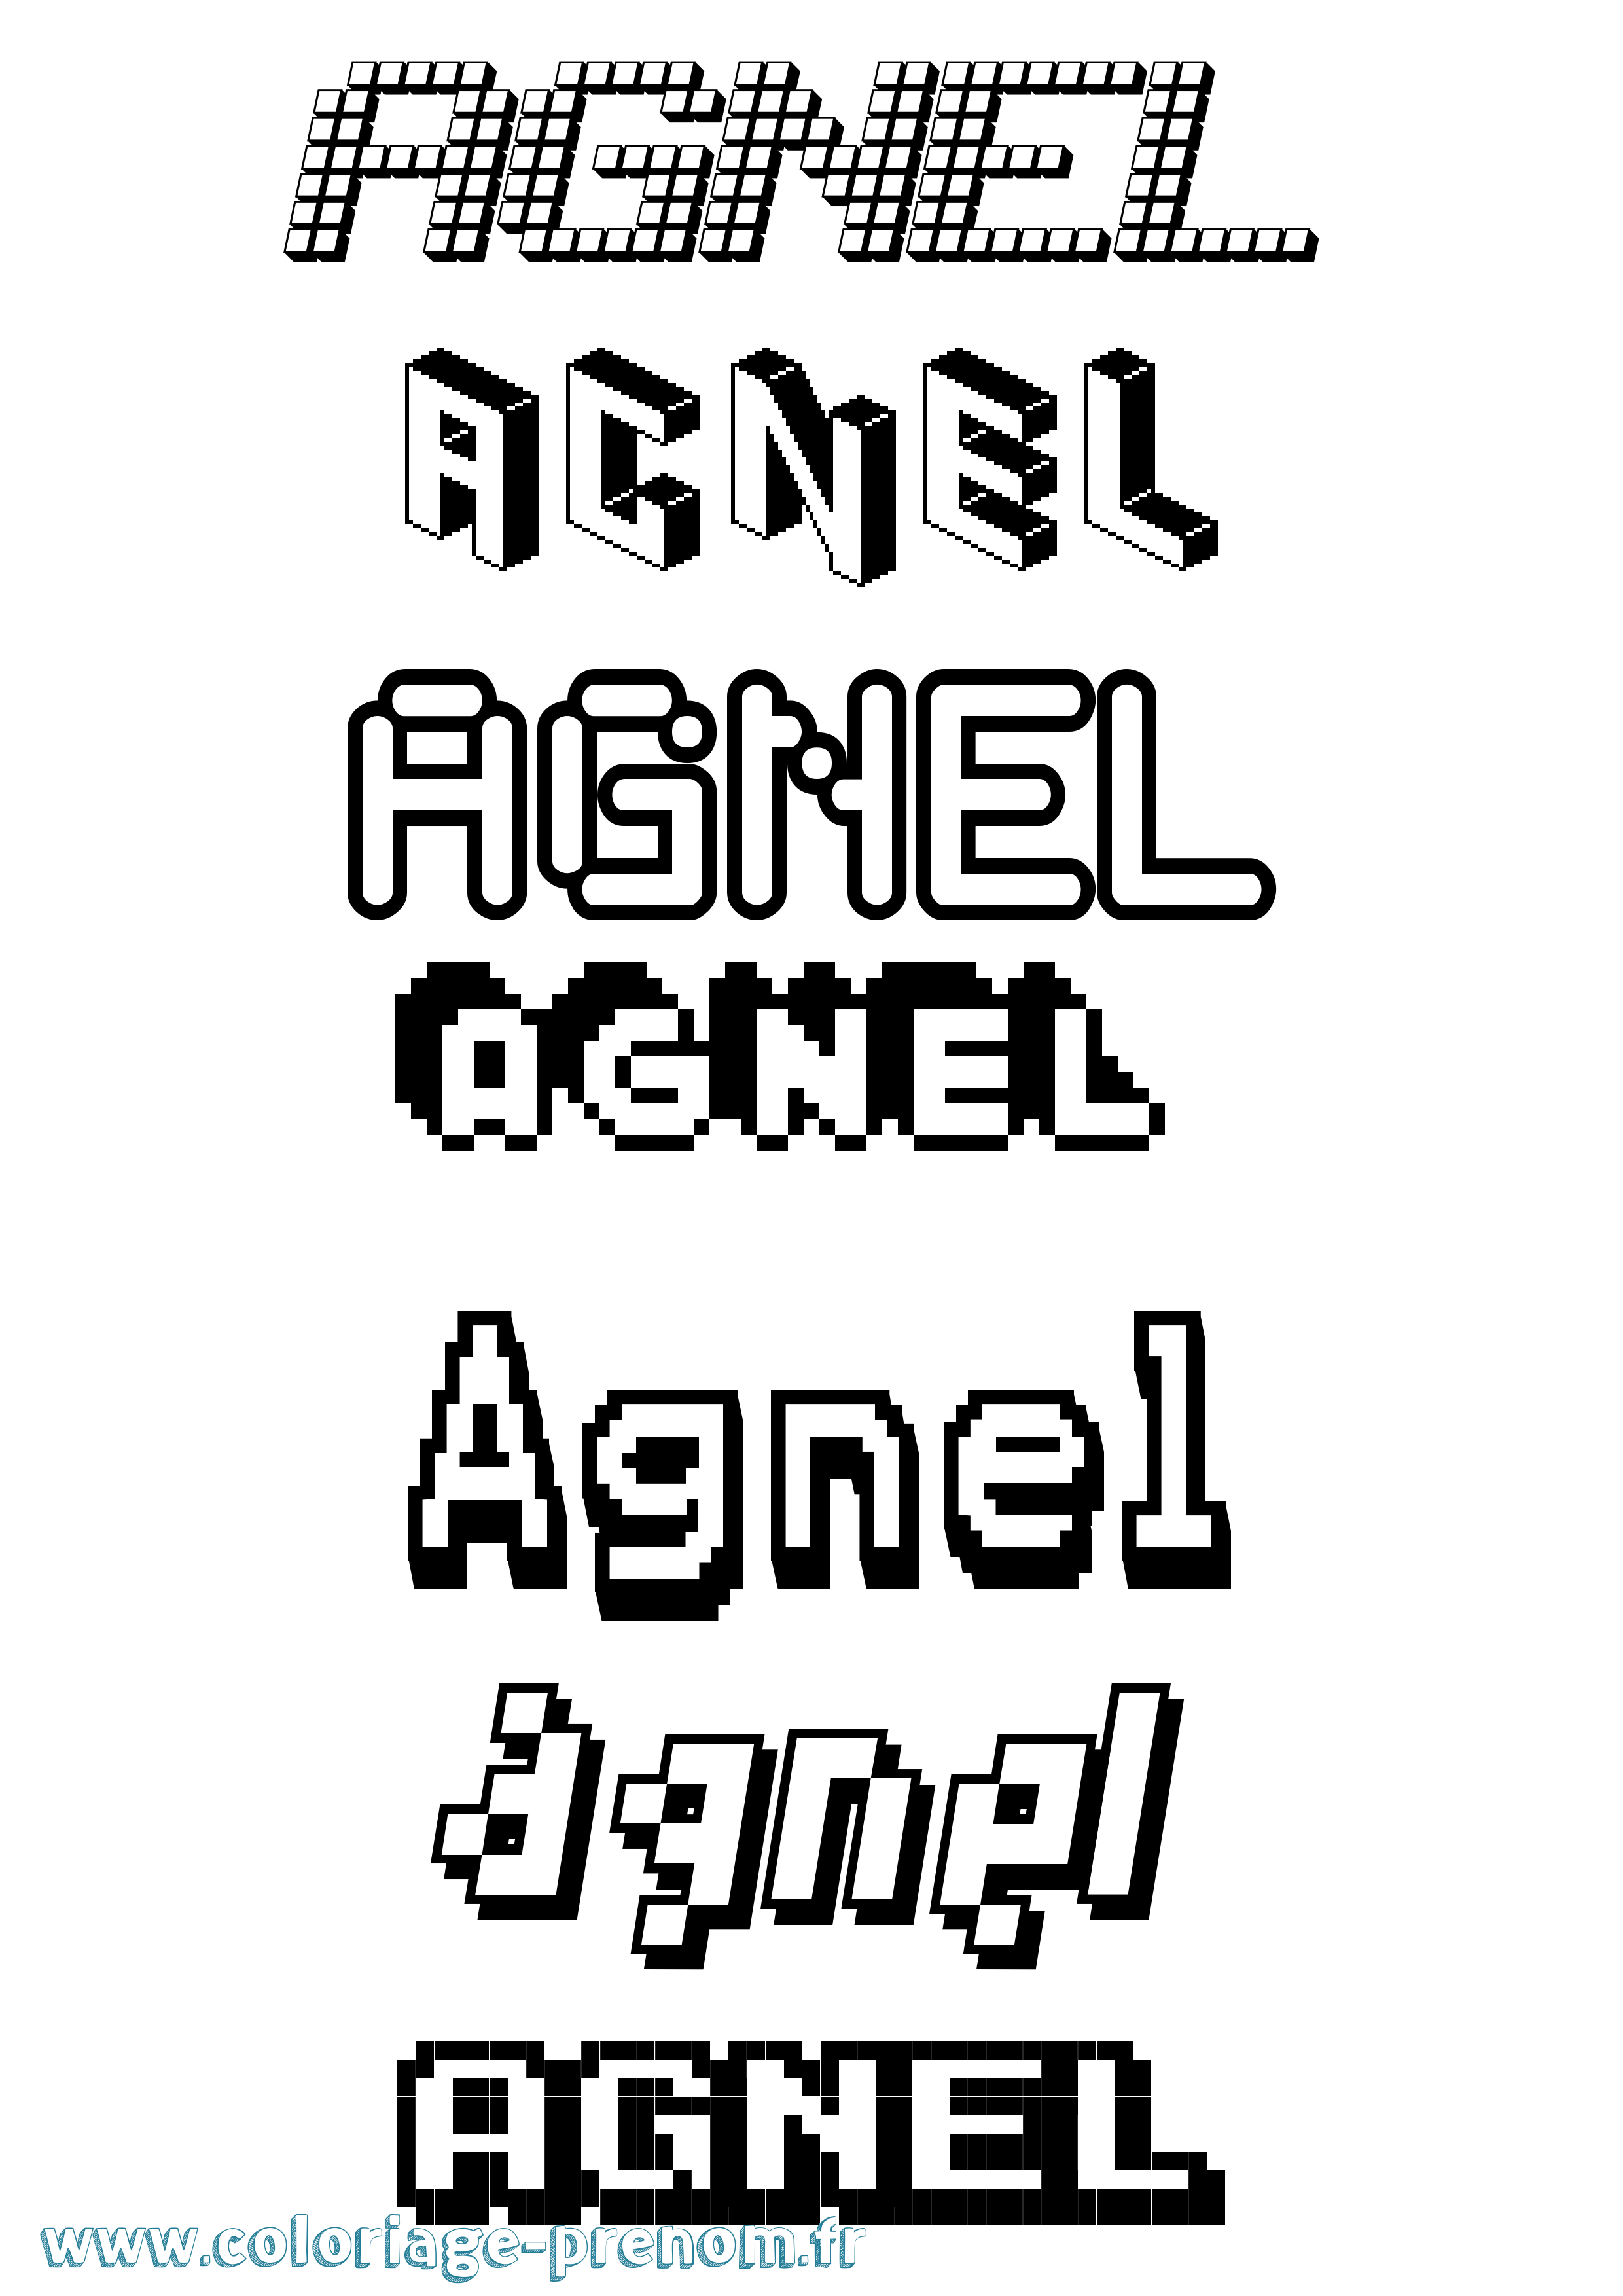 Coloriage prénom Agnel Pixel